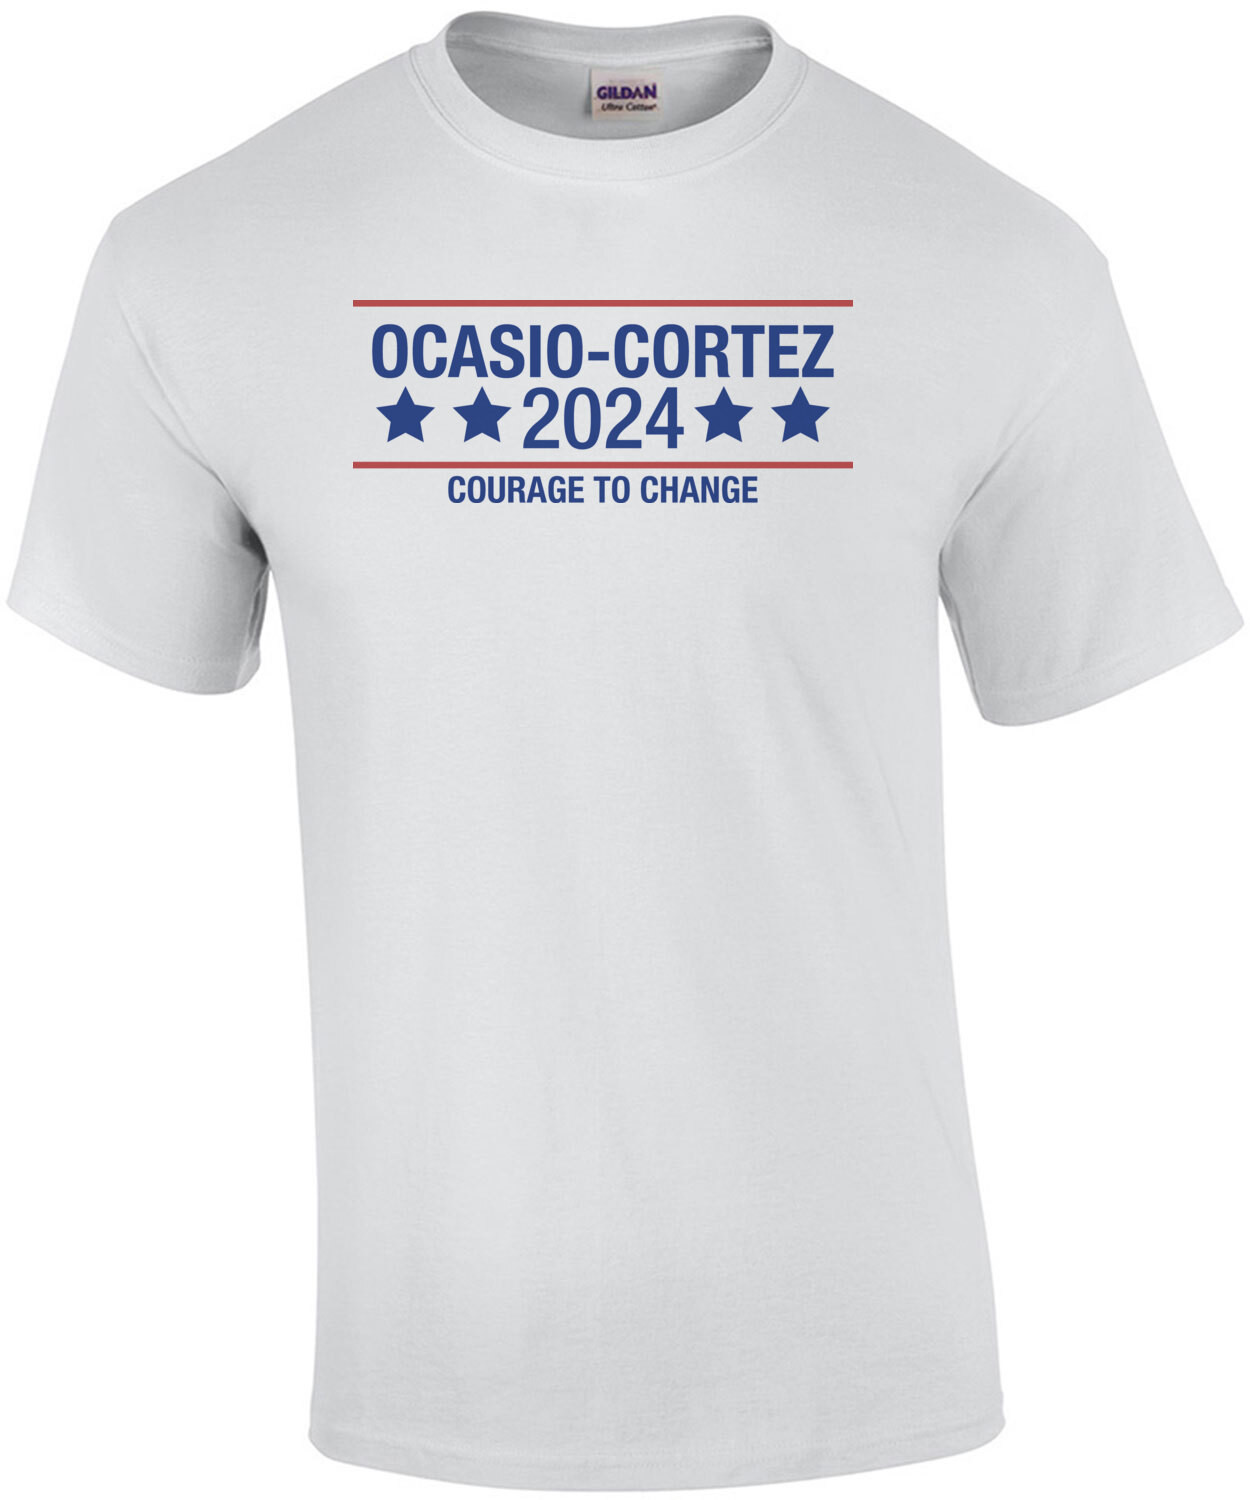 Ocasio-Cortez 2024 Courage to Change Shirt